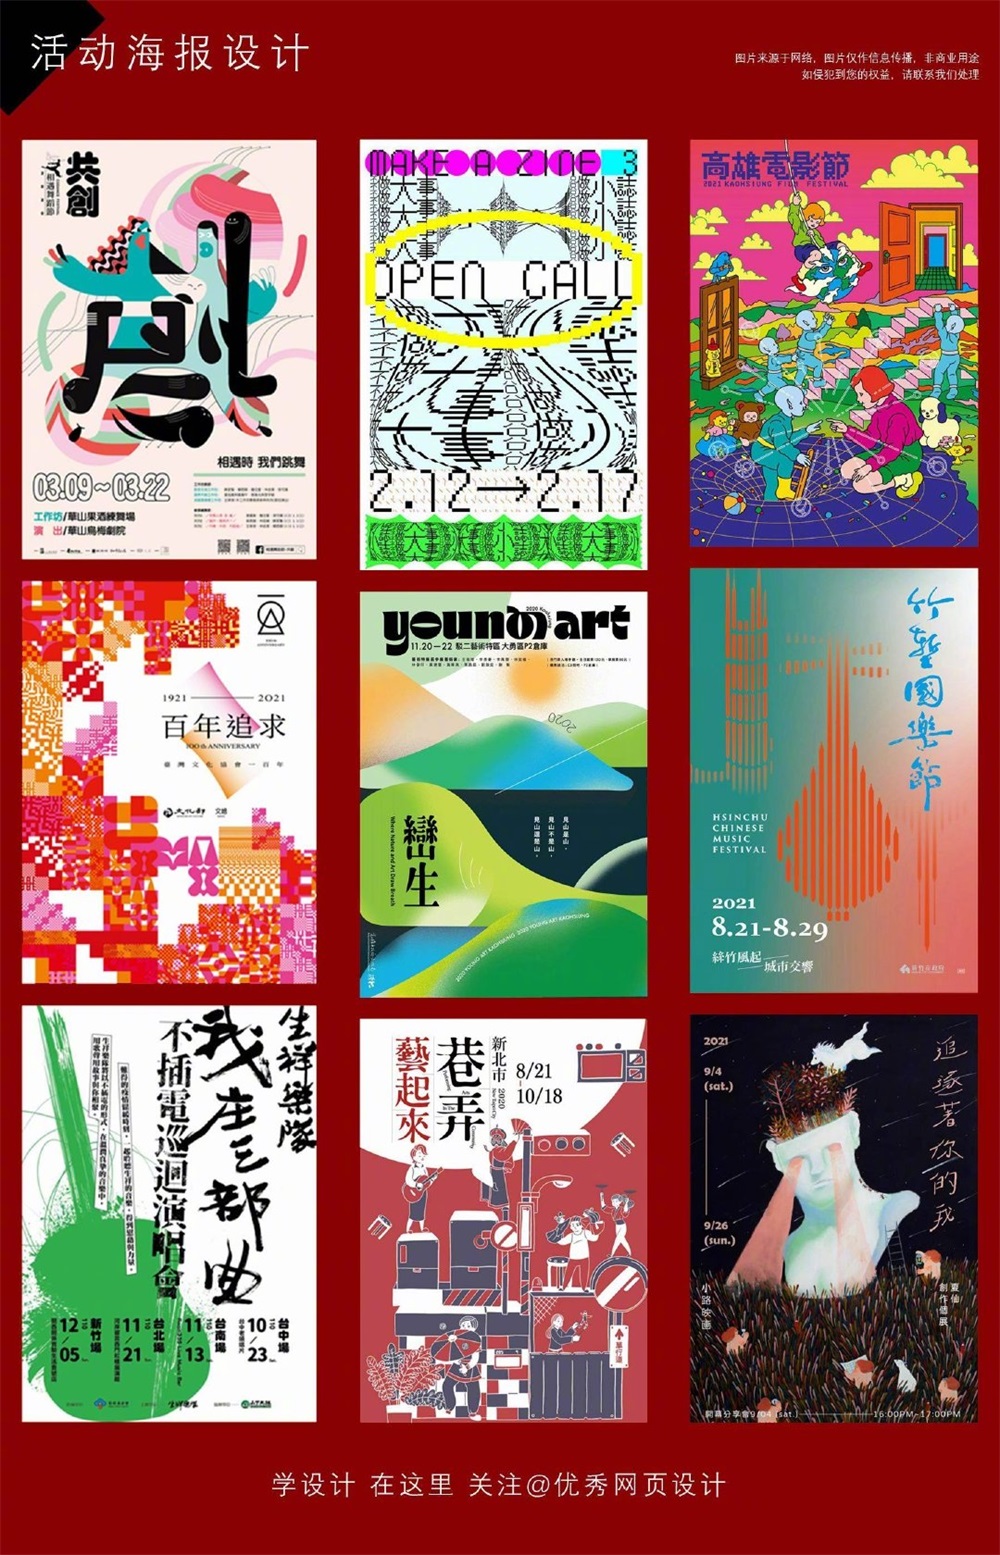 81 张设计感满满的中文海报设计